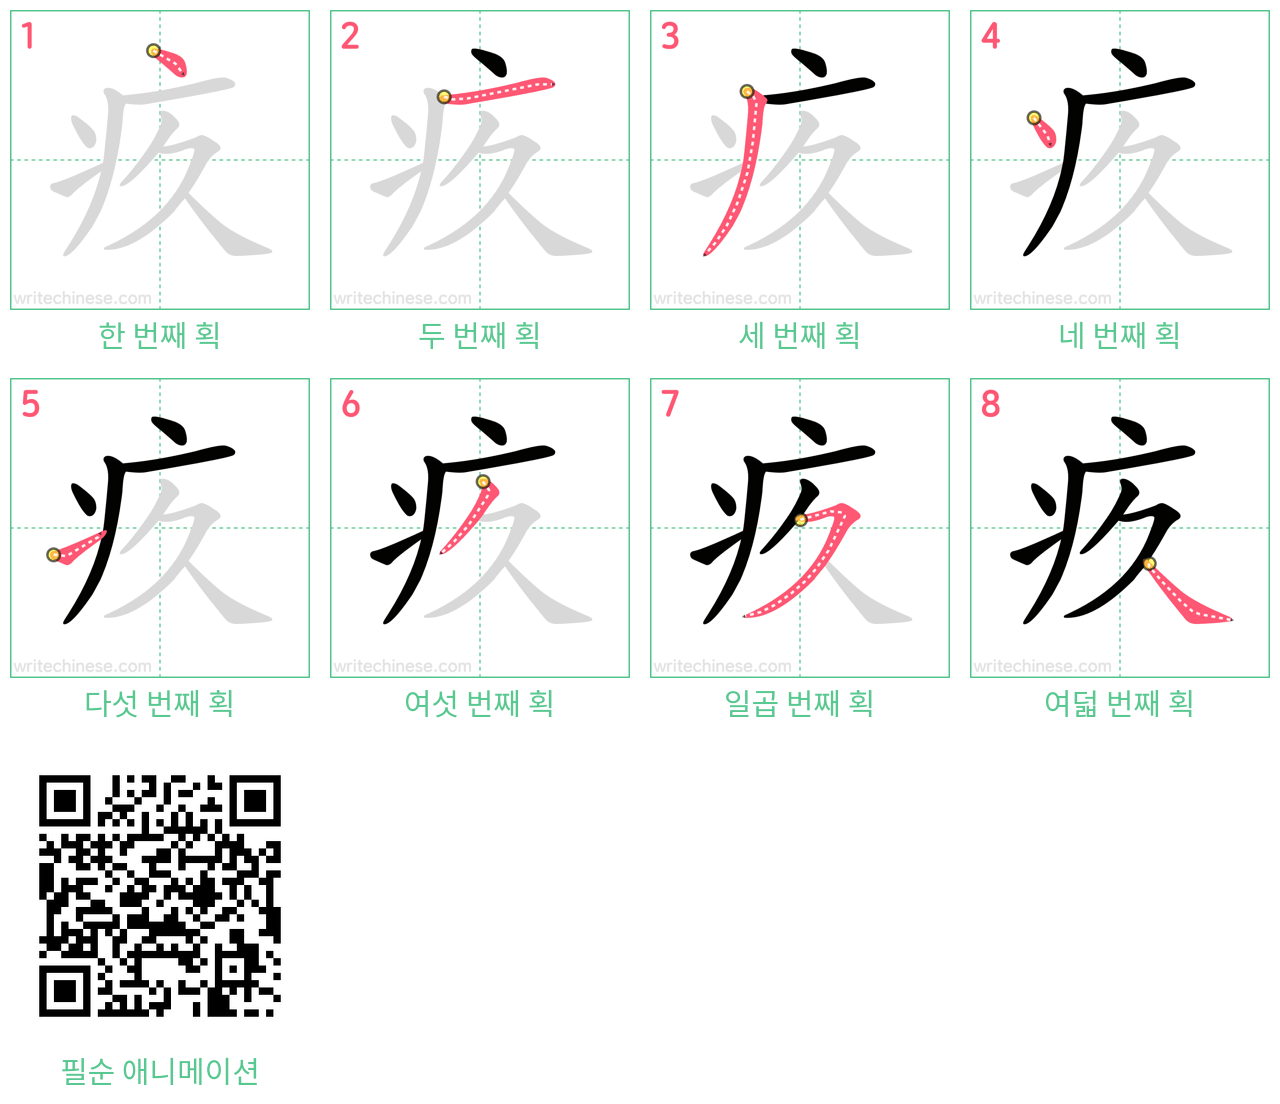 疚 step-by-step stroke order diagrams